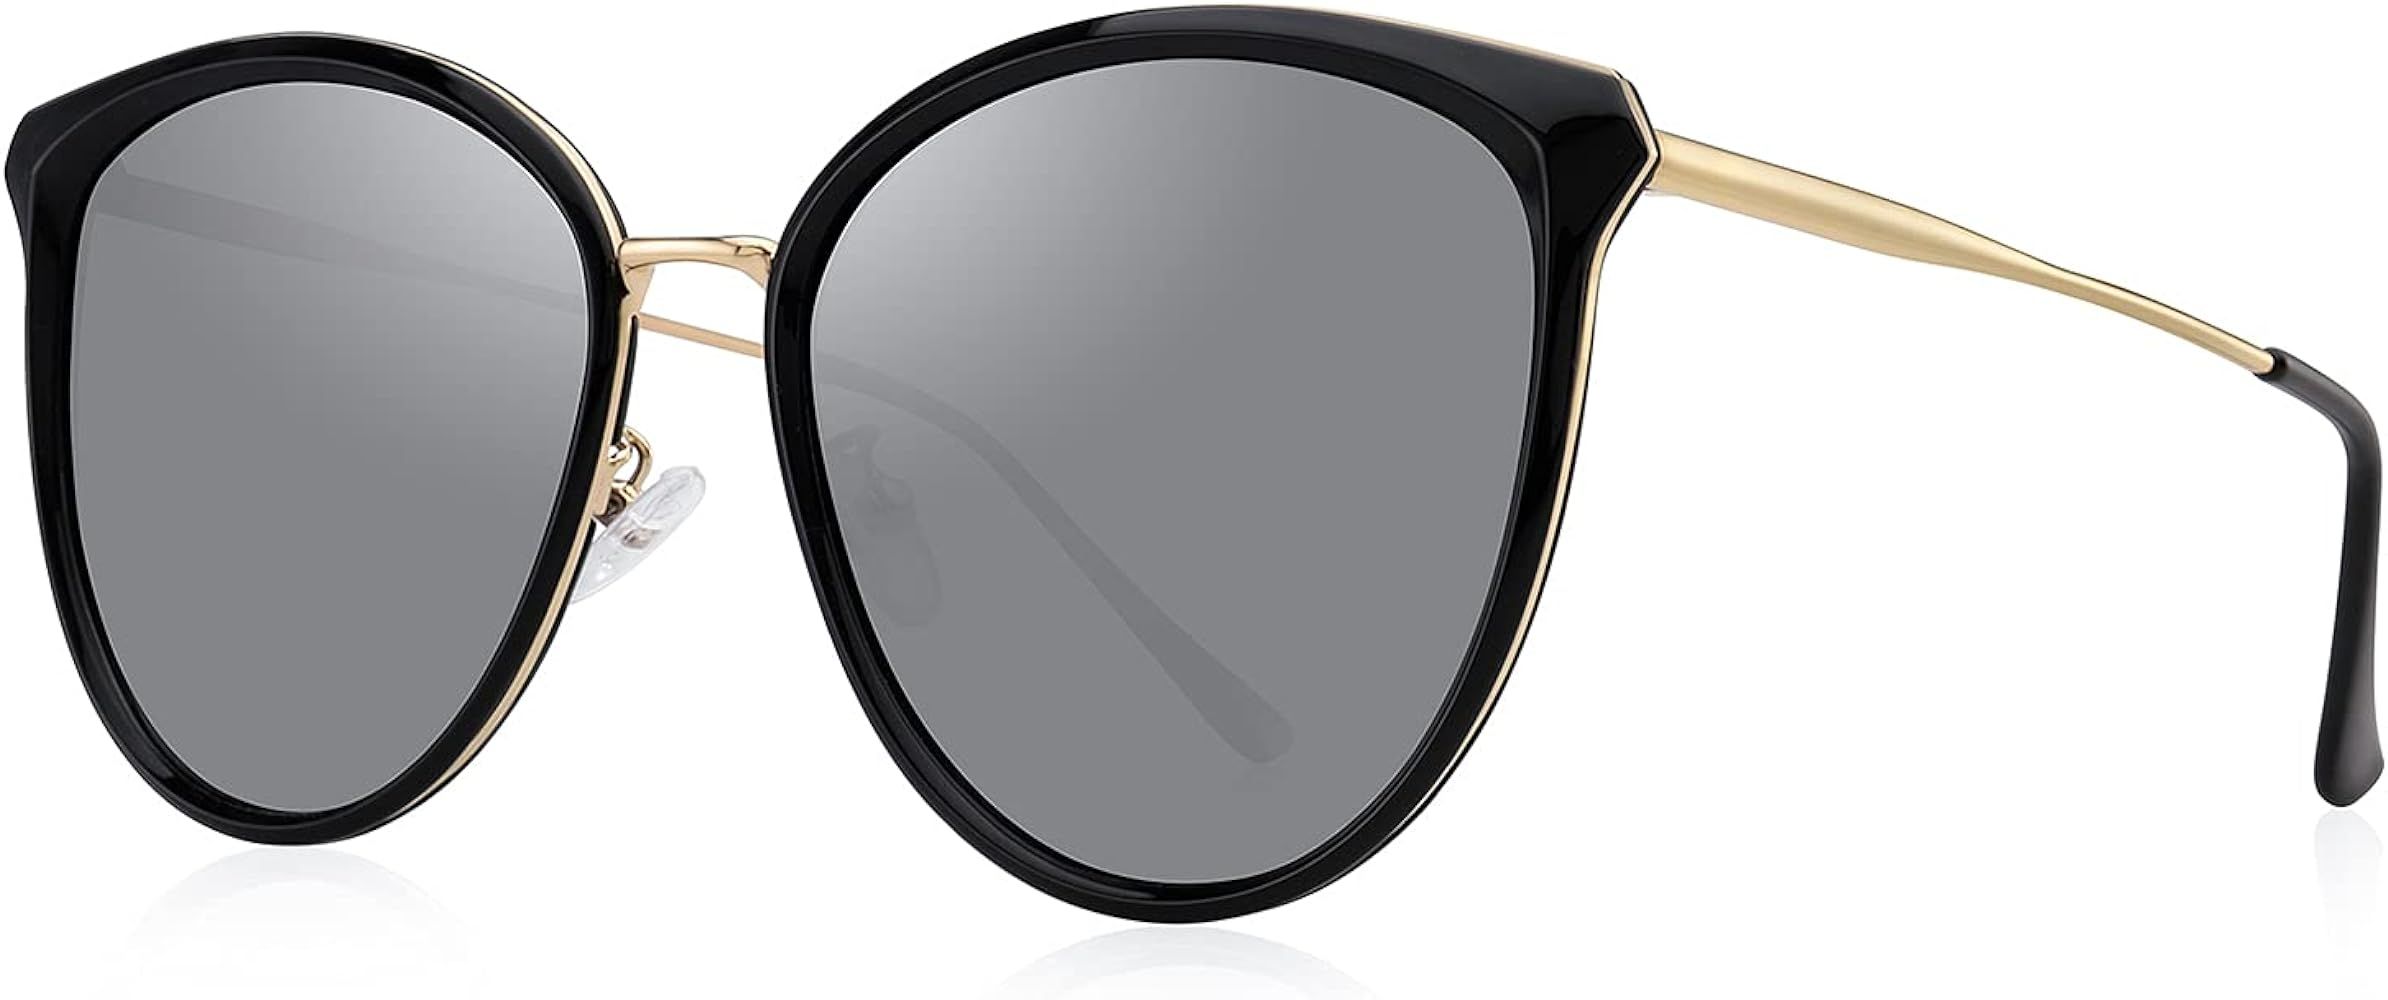 OLIEYE Vintage Polarized Cat eye sunglasses for Women Classic Oversized Cateye Sunglasses | Amazon (US)